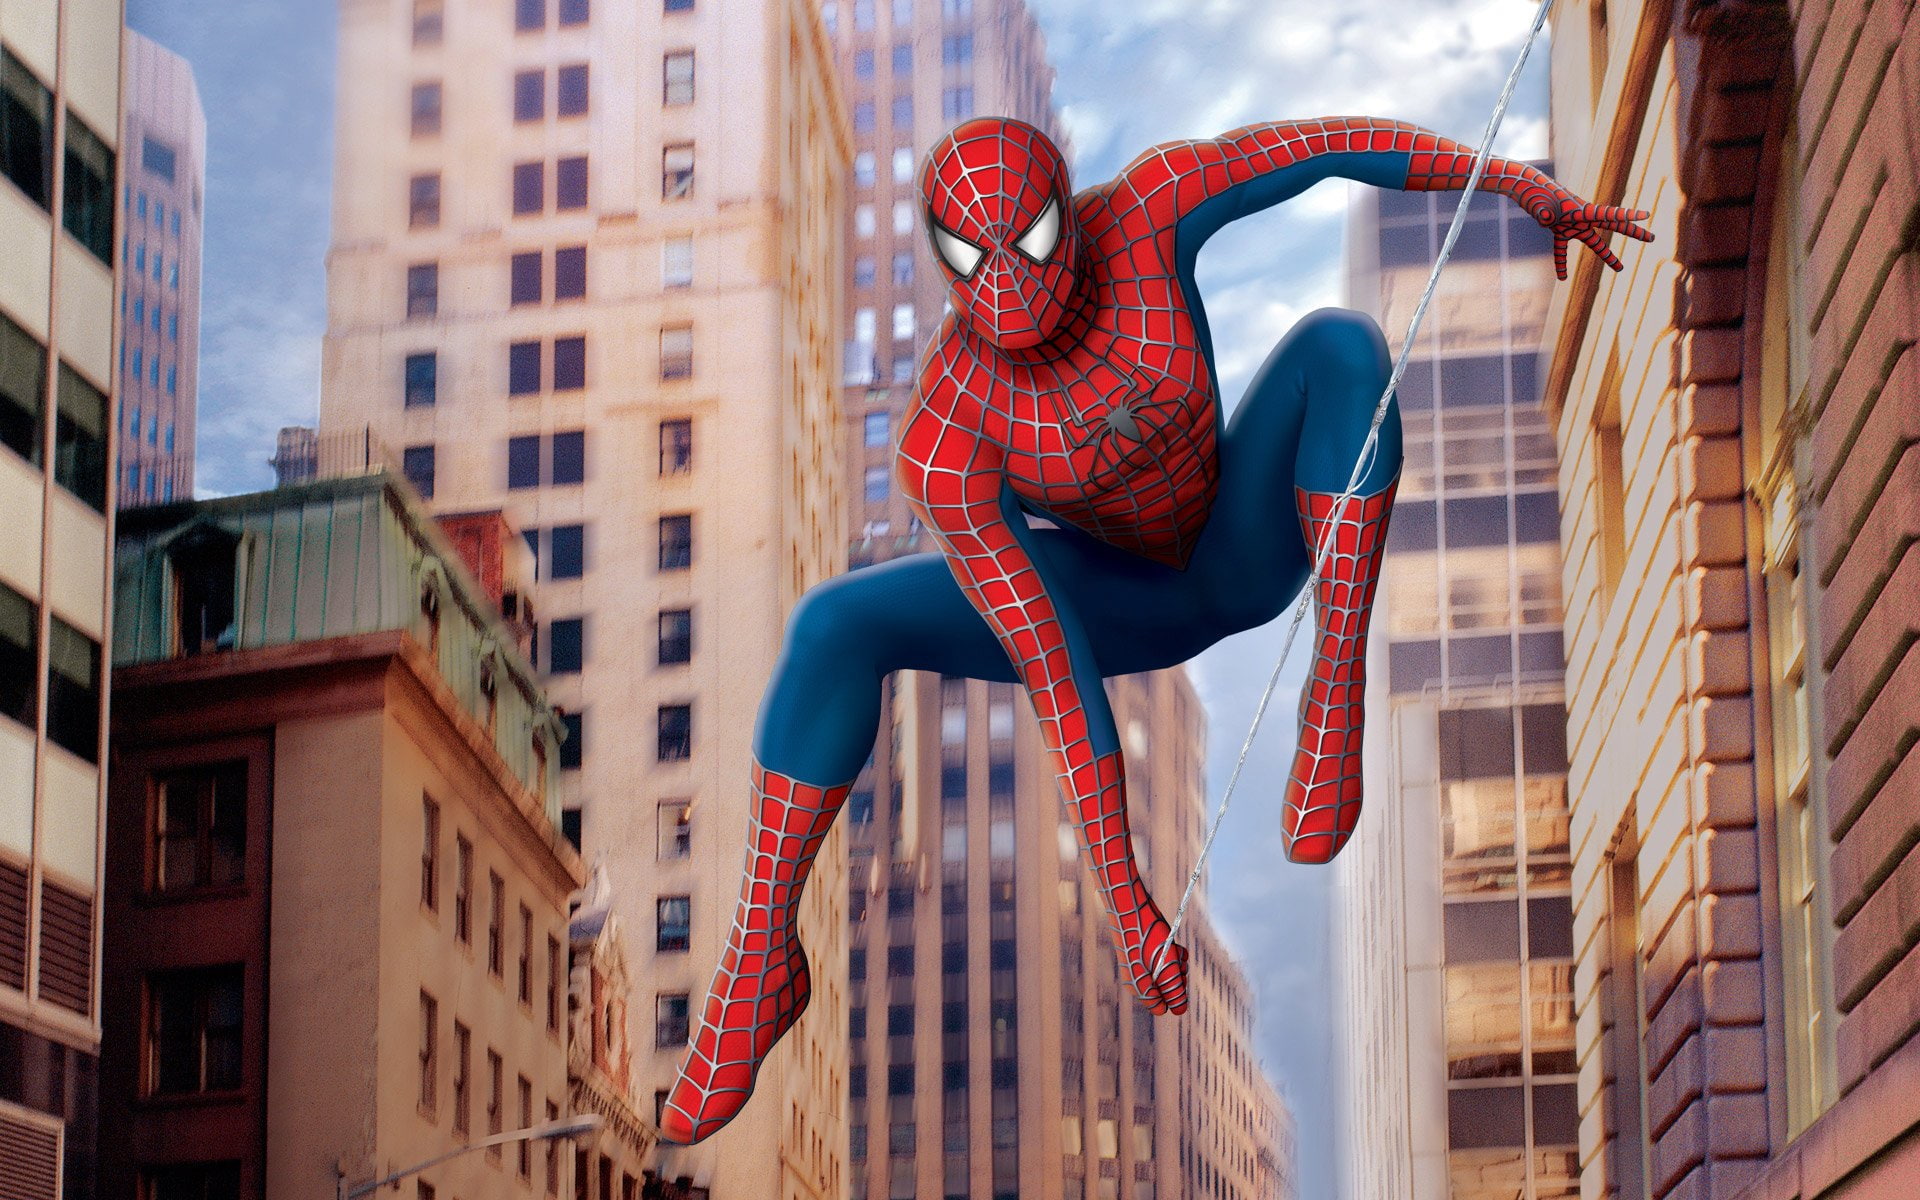 Spider-Man, The Amazing Spider-Man 2